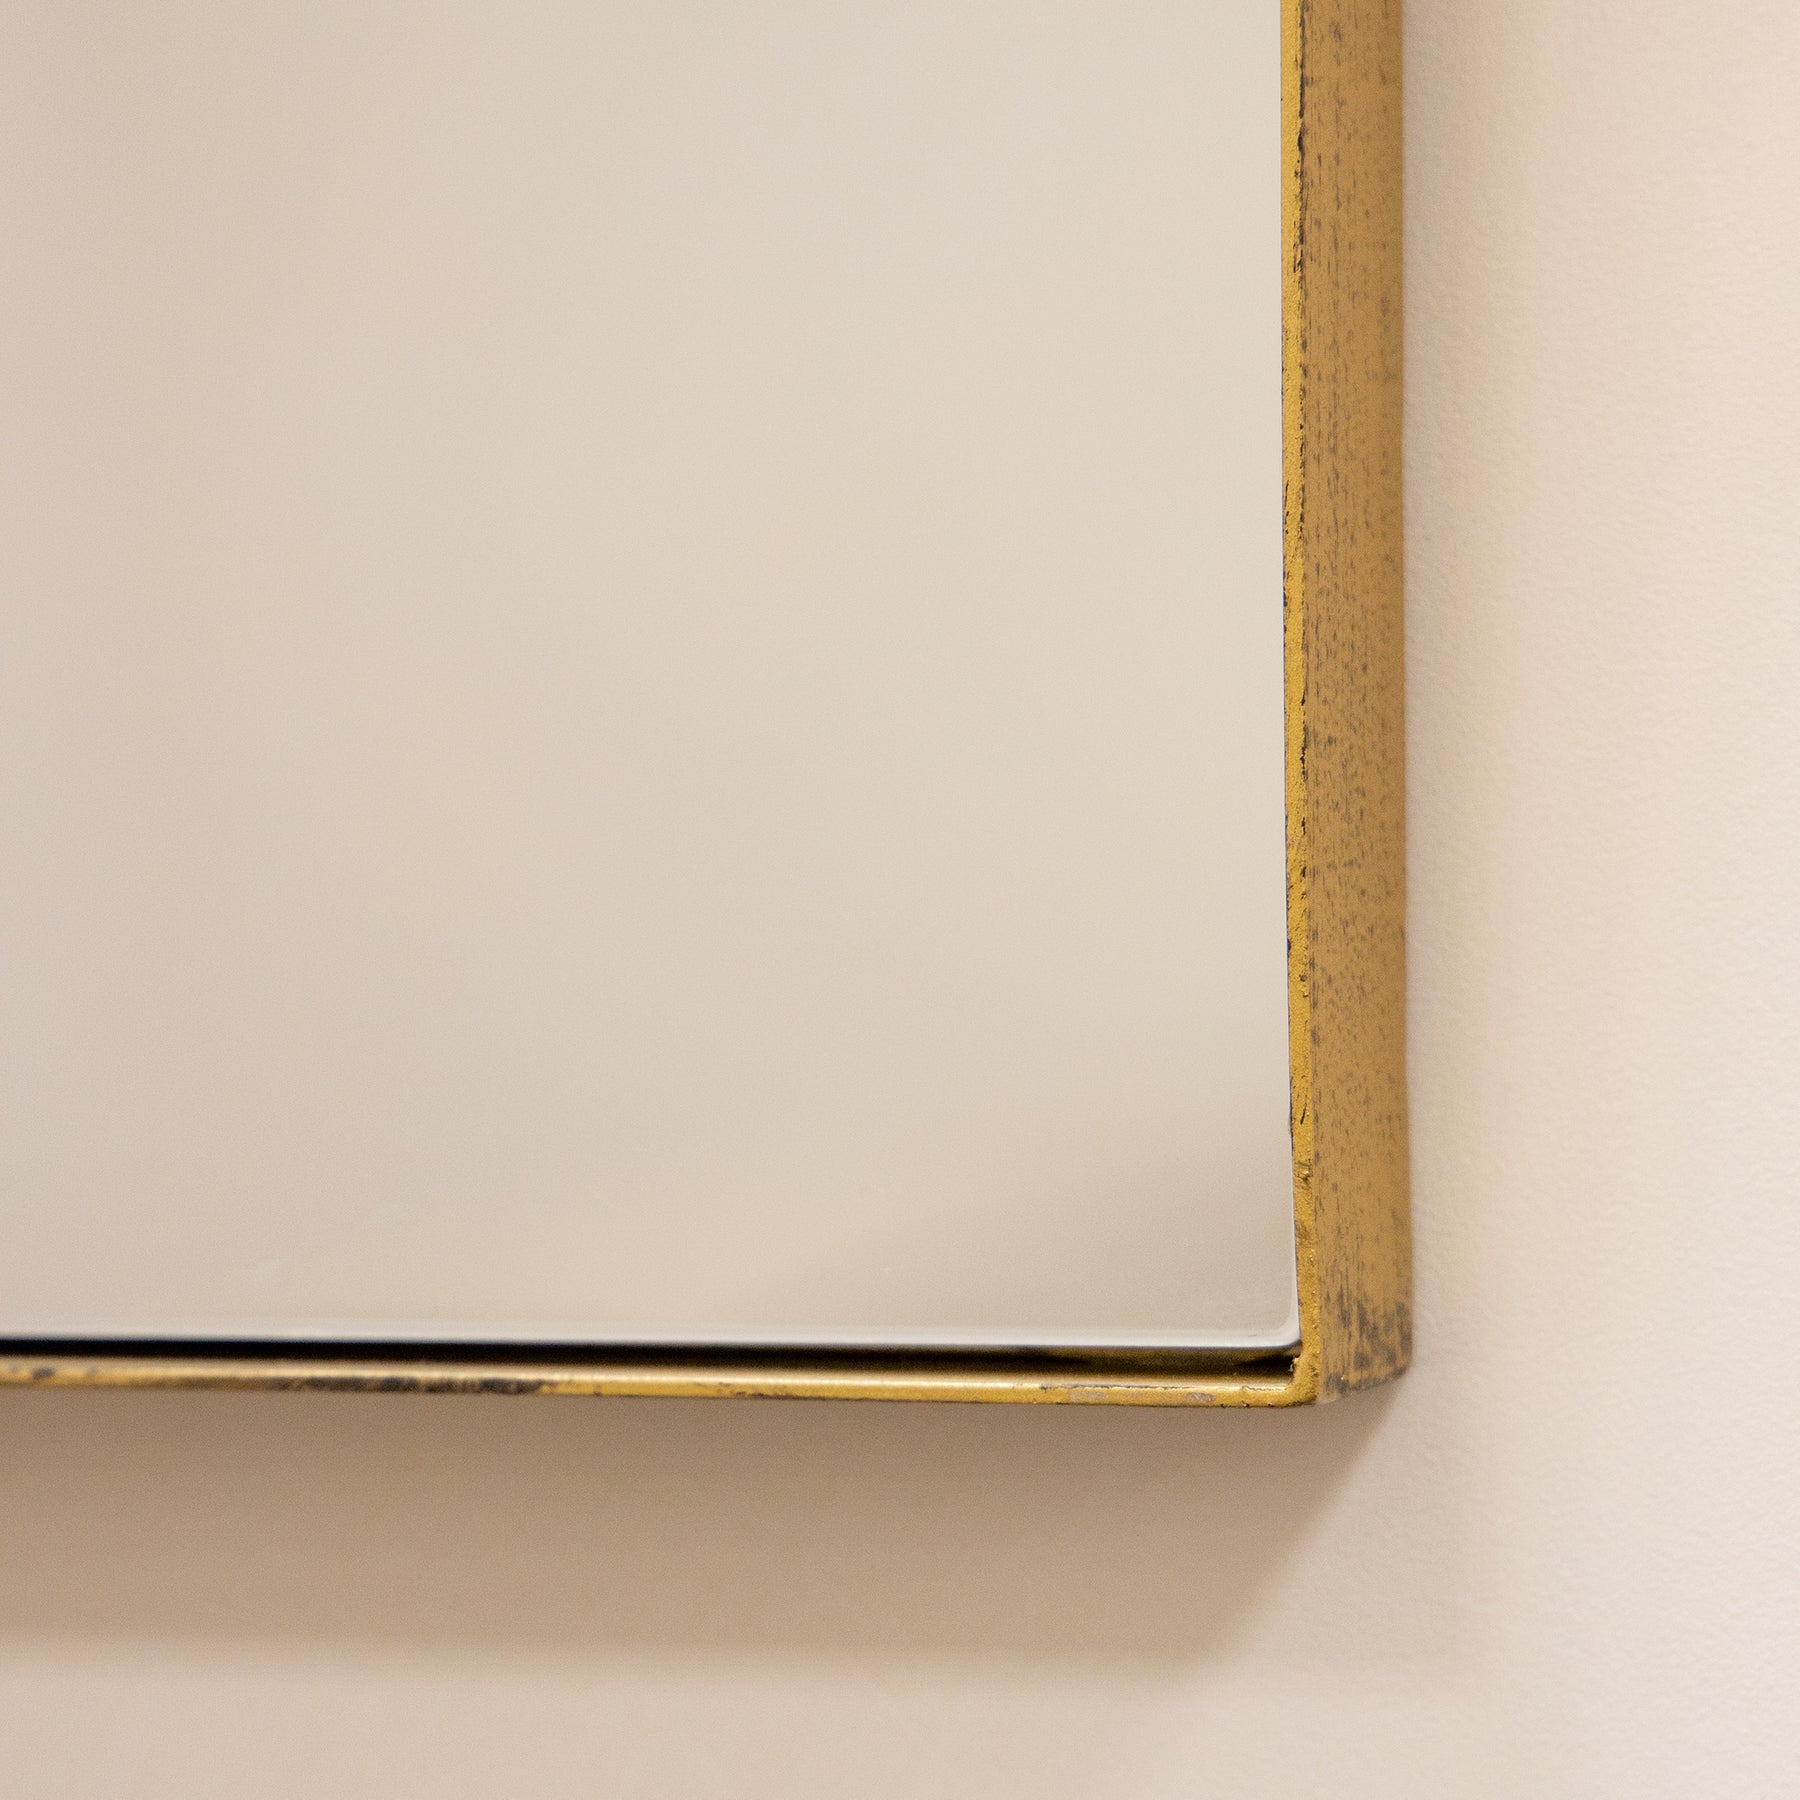 Detail shot of Gold Rectangular Metal Large Wall Mirror corner